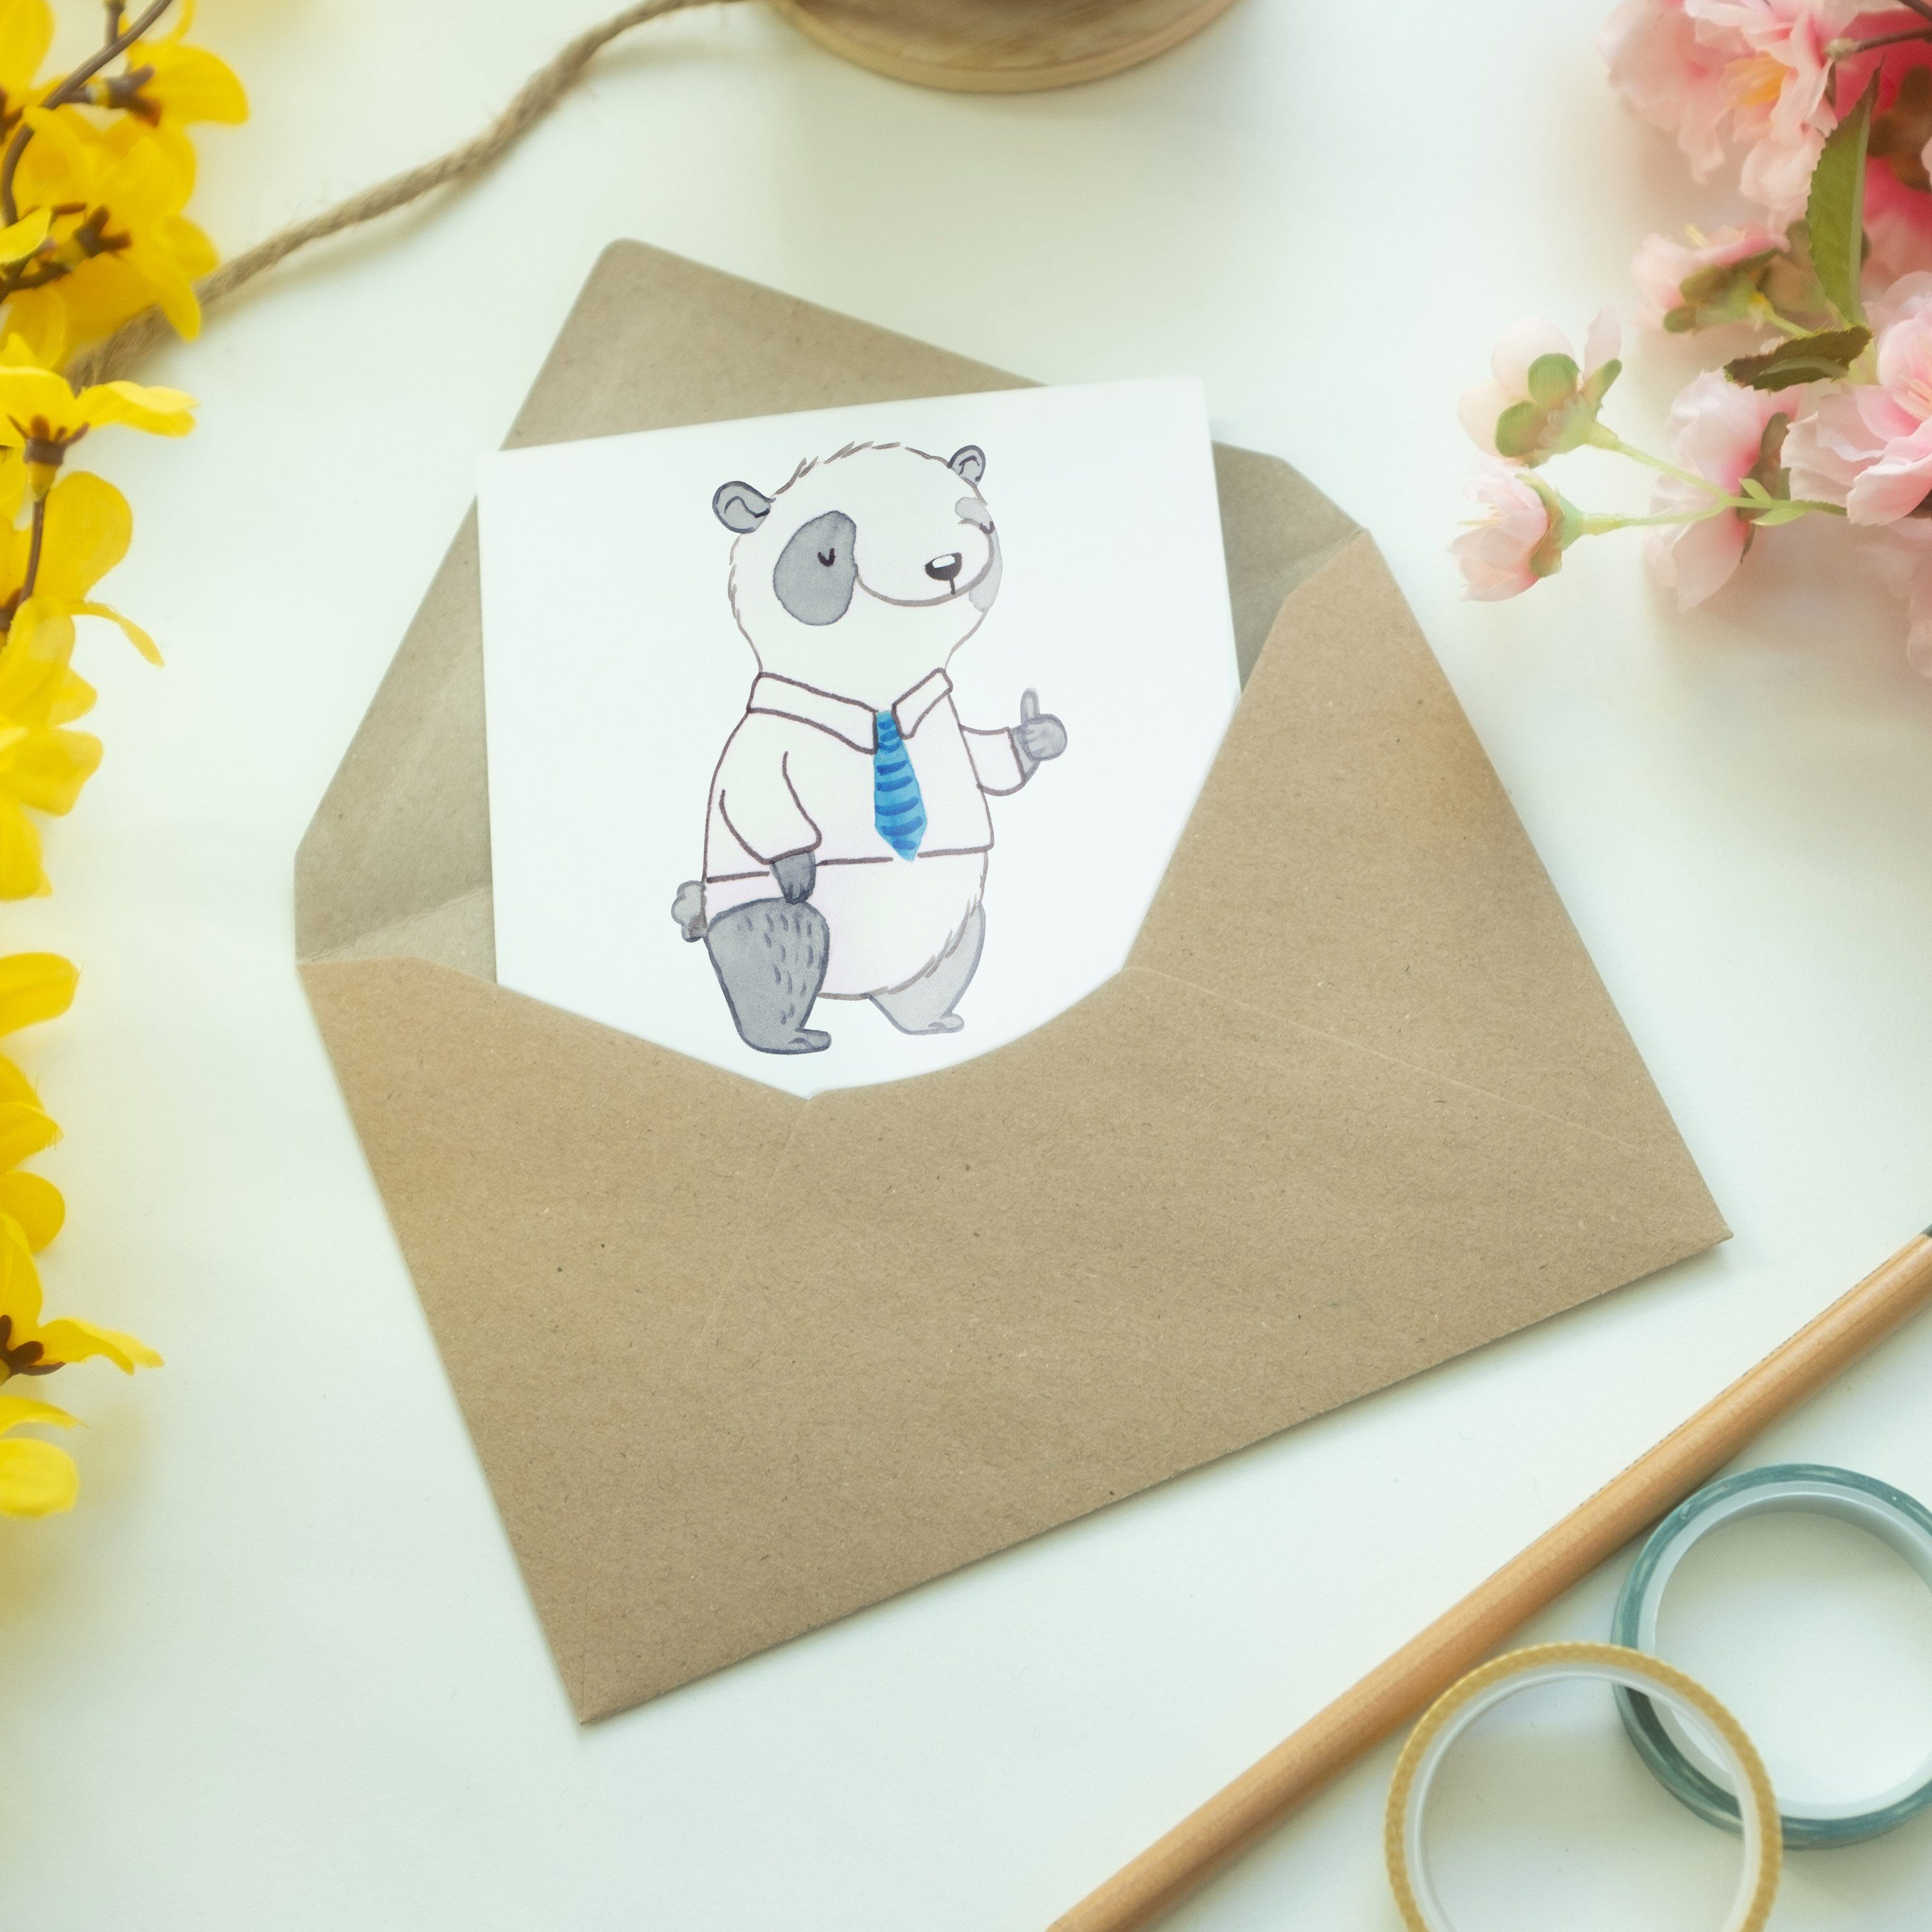 & Mrs. Geburtstagskart Panda Panda der Weiß Vorgesetzter Mr. Welt Geschenk, Bester - - Grußkarte